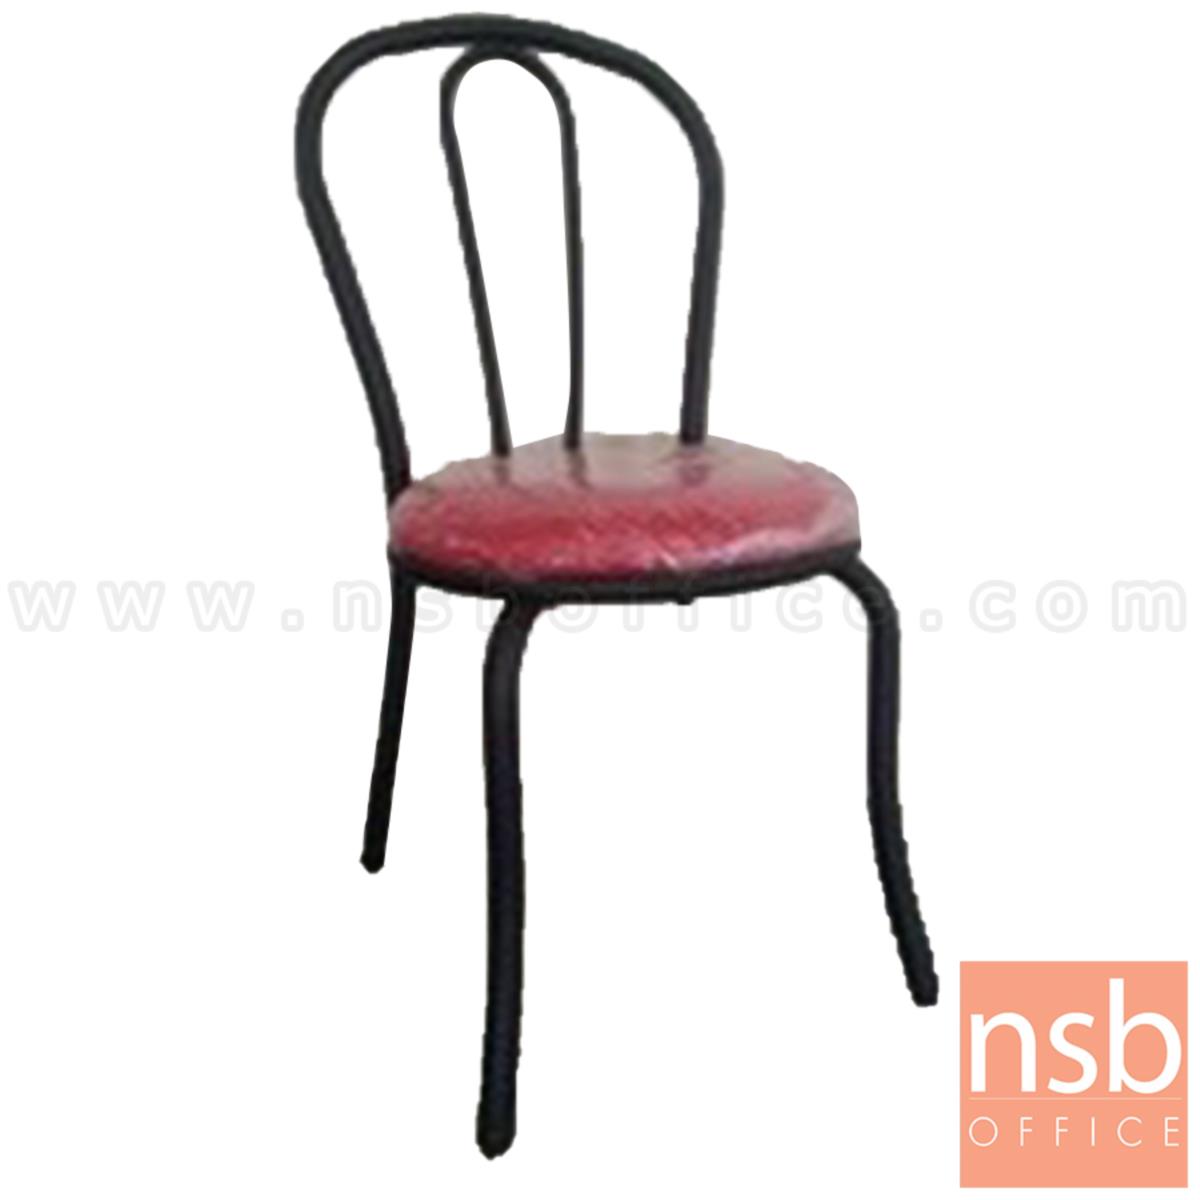 B20A113:เก้าอี้อเนกประสงค์เหล็ก รุ่น Sibyl (ซิบิล)  ขาเหล็กพ่นสีดำ